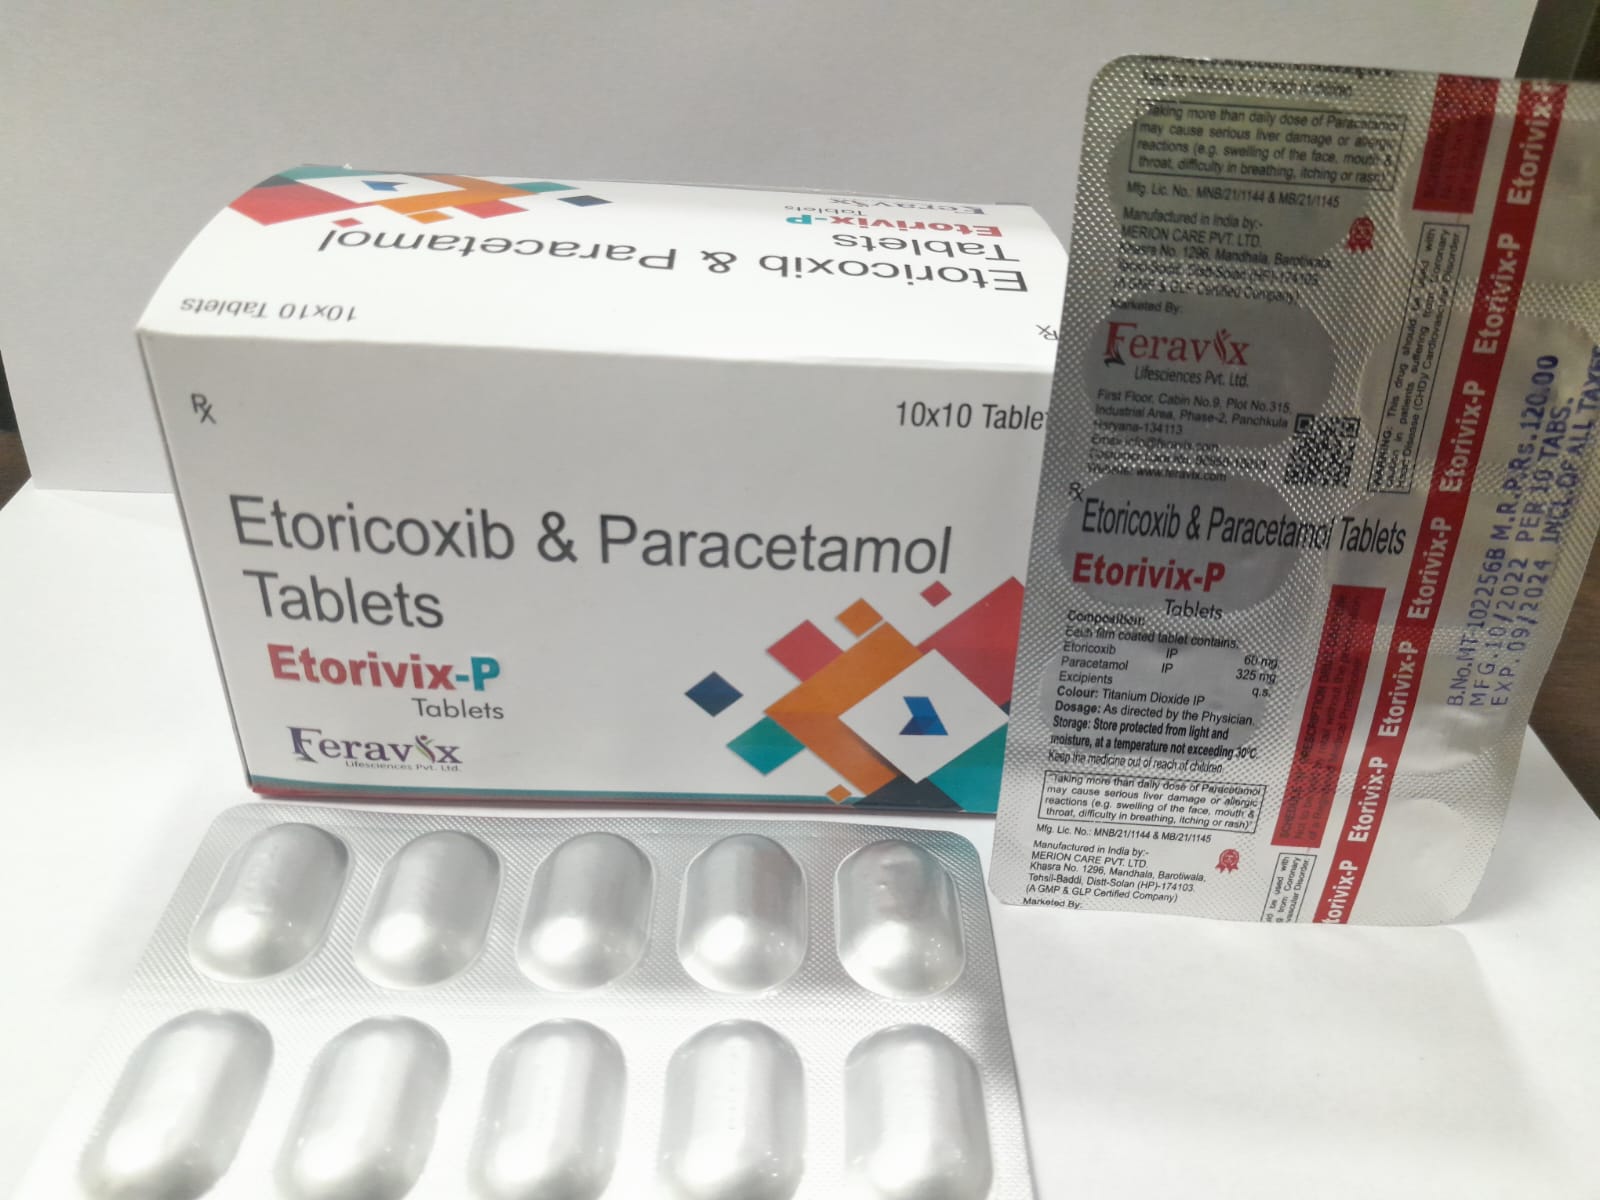 Product Name: ETORIVIX P Tablets, Compositions of ETORIVIX P Tablets are ETORICOXIB 60MG, PARACETAMOL 325MG - Feravix Lifesciences